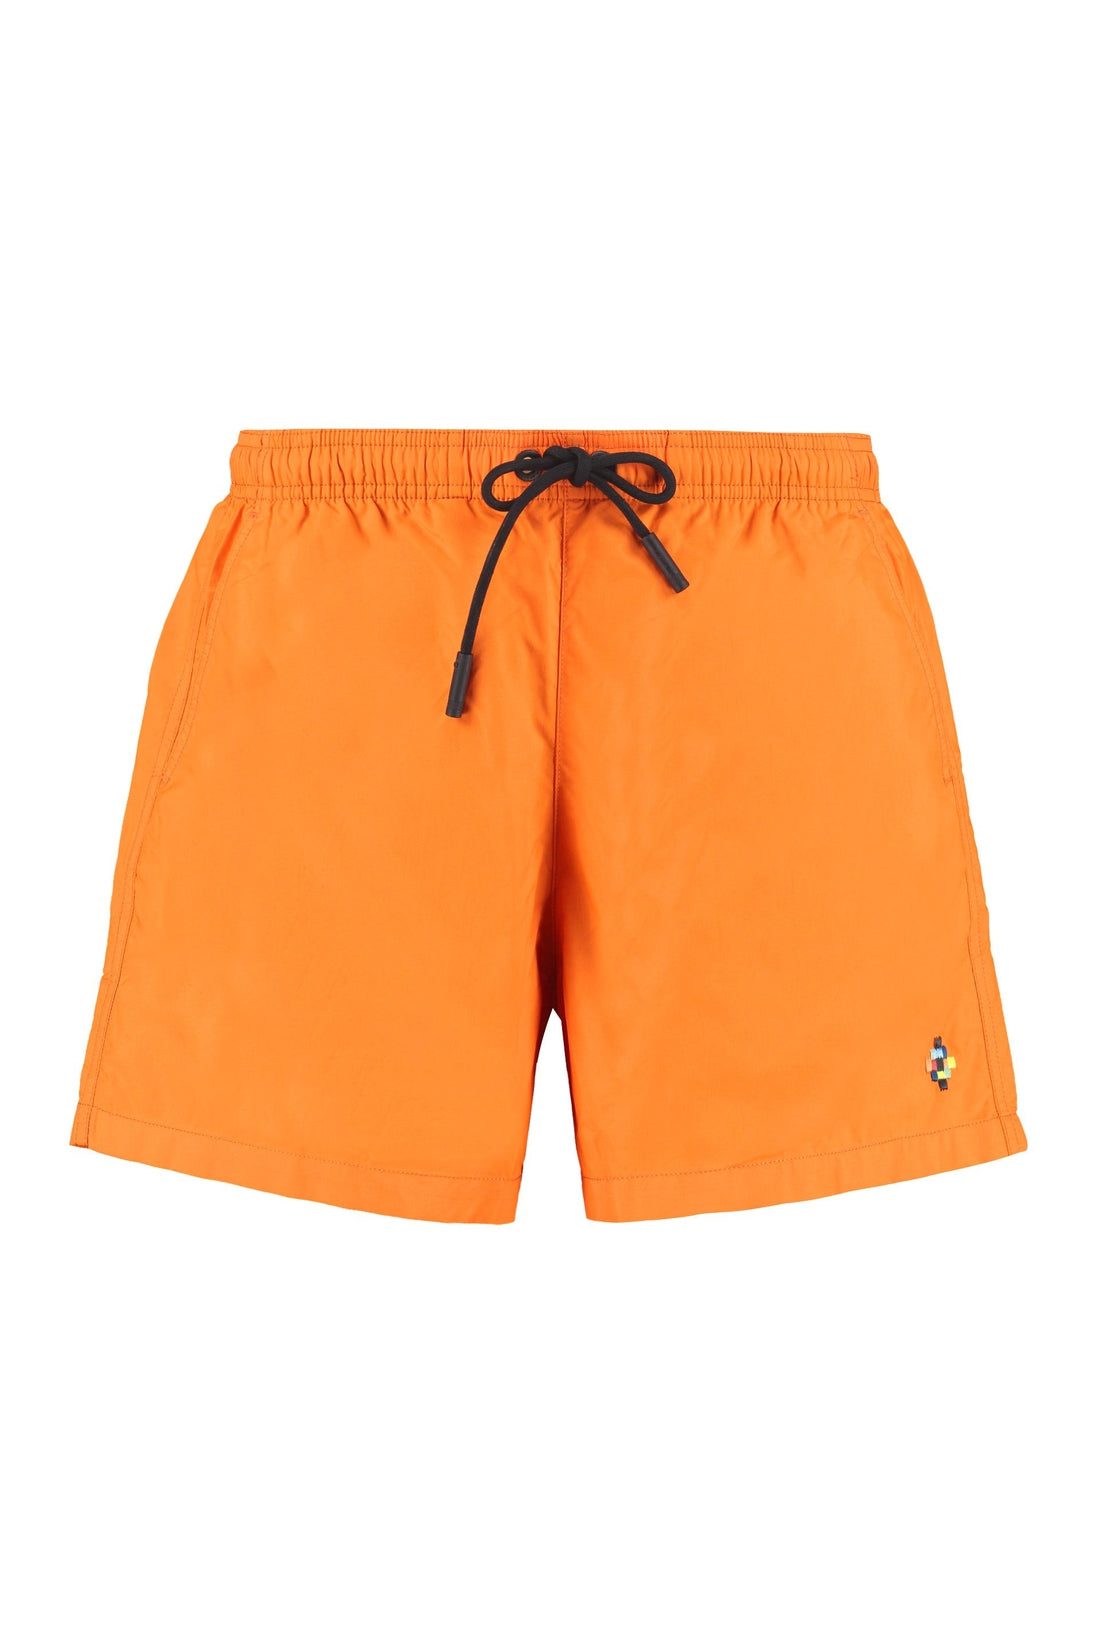 Marcelo Burlon County of Milan-OUTLET-SALE-Logo print swim shorts-ARCHIVIST